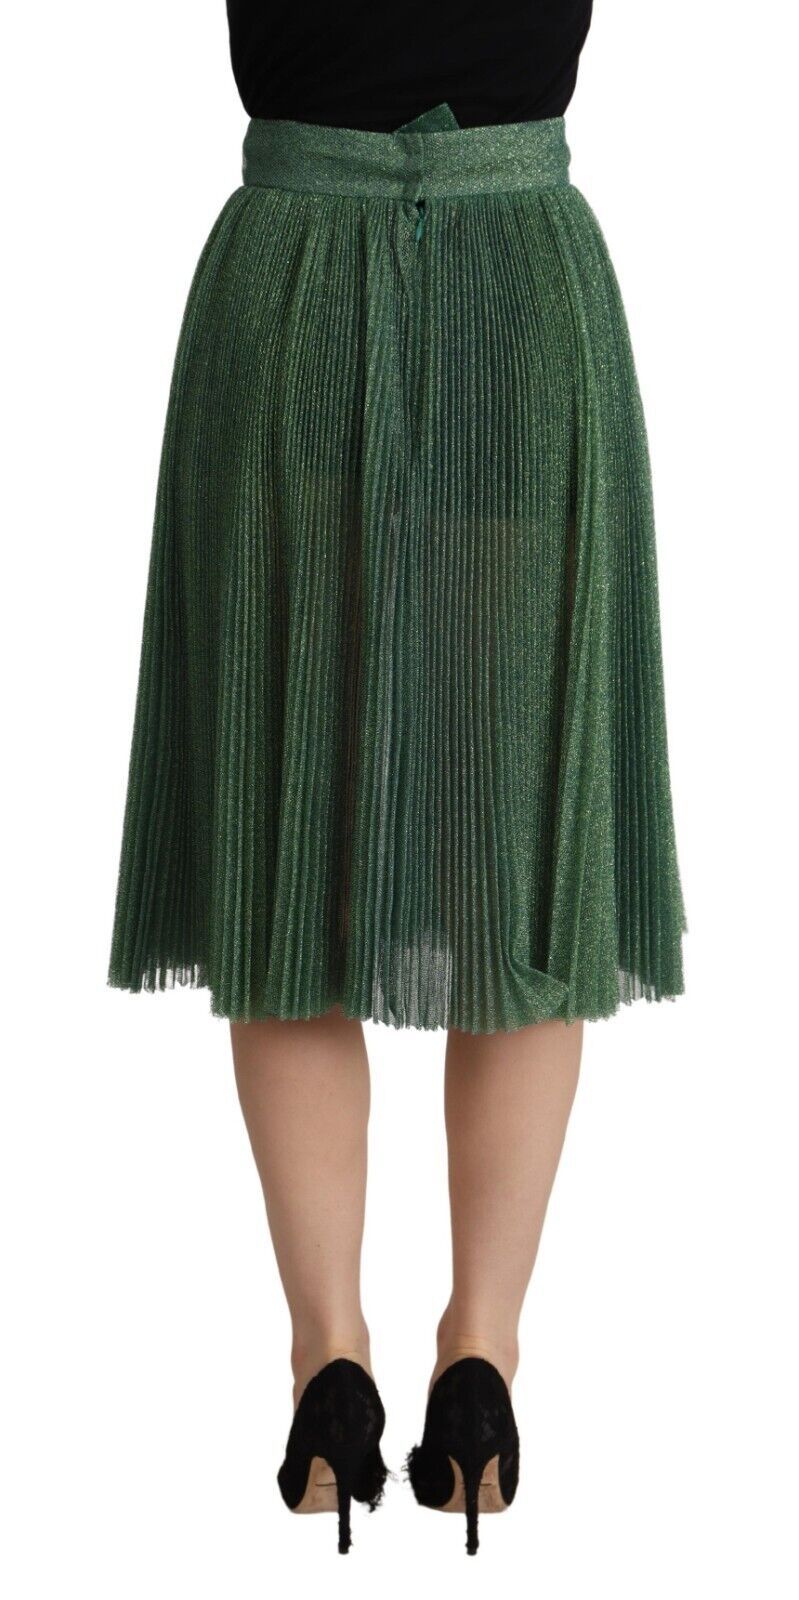 Dolce & Gabbana Metallic Green High Waist A-line Pleated Women's Skirt